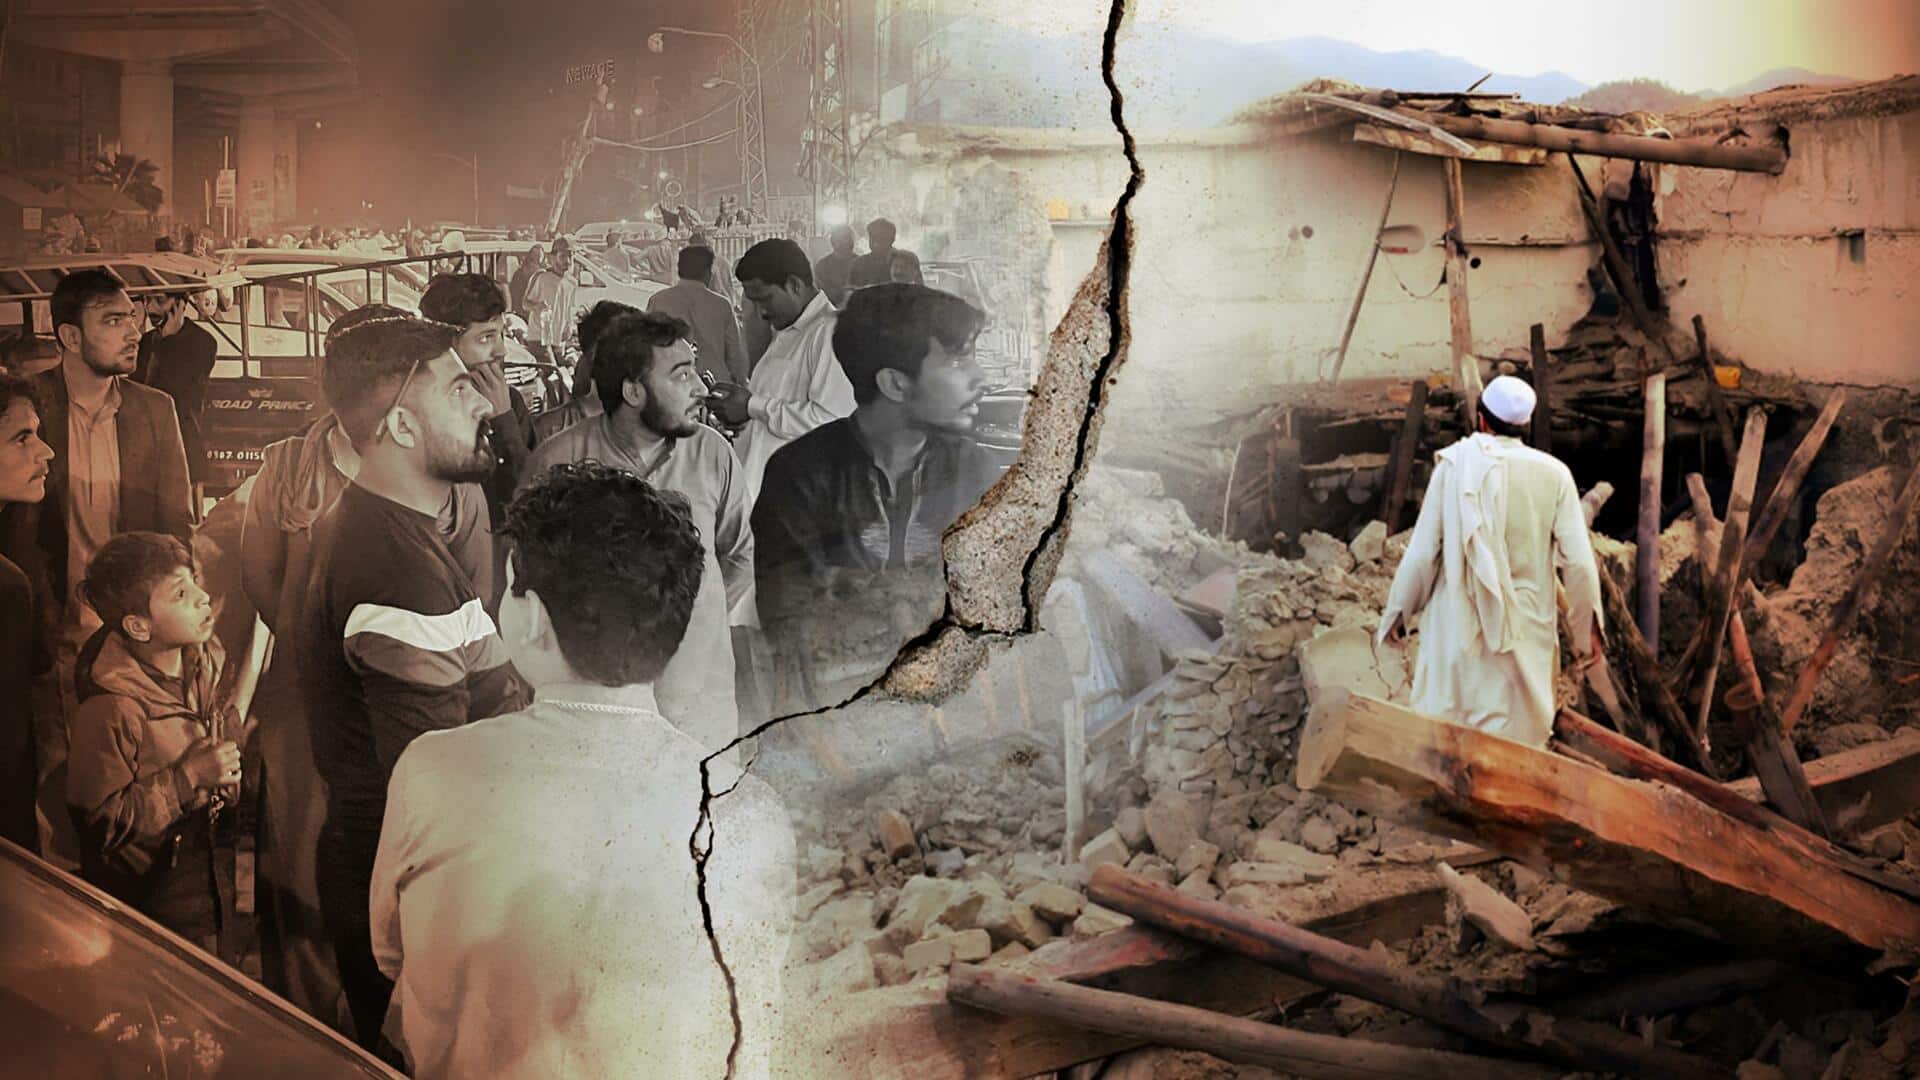 अफगानिस्तान में आए भूकंप के झटके उत्तर भारत में क्यों महसूस किए गए? 